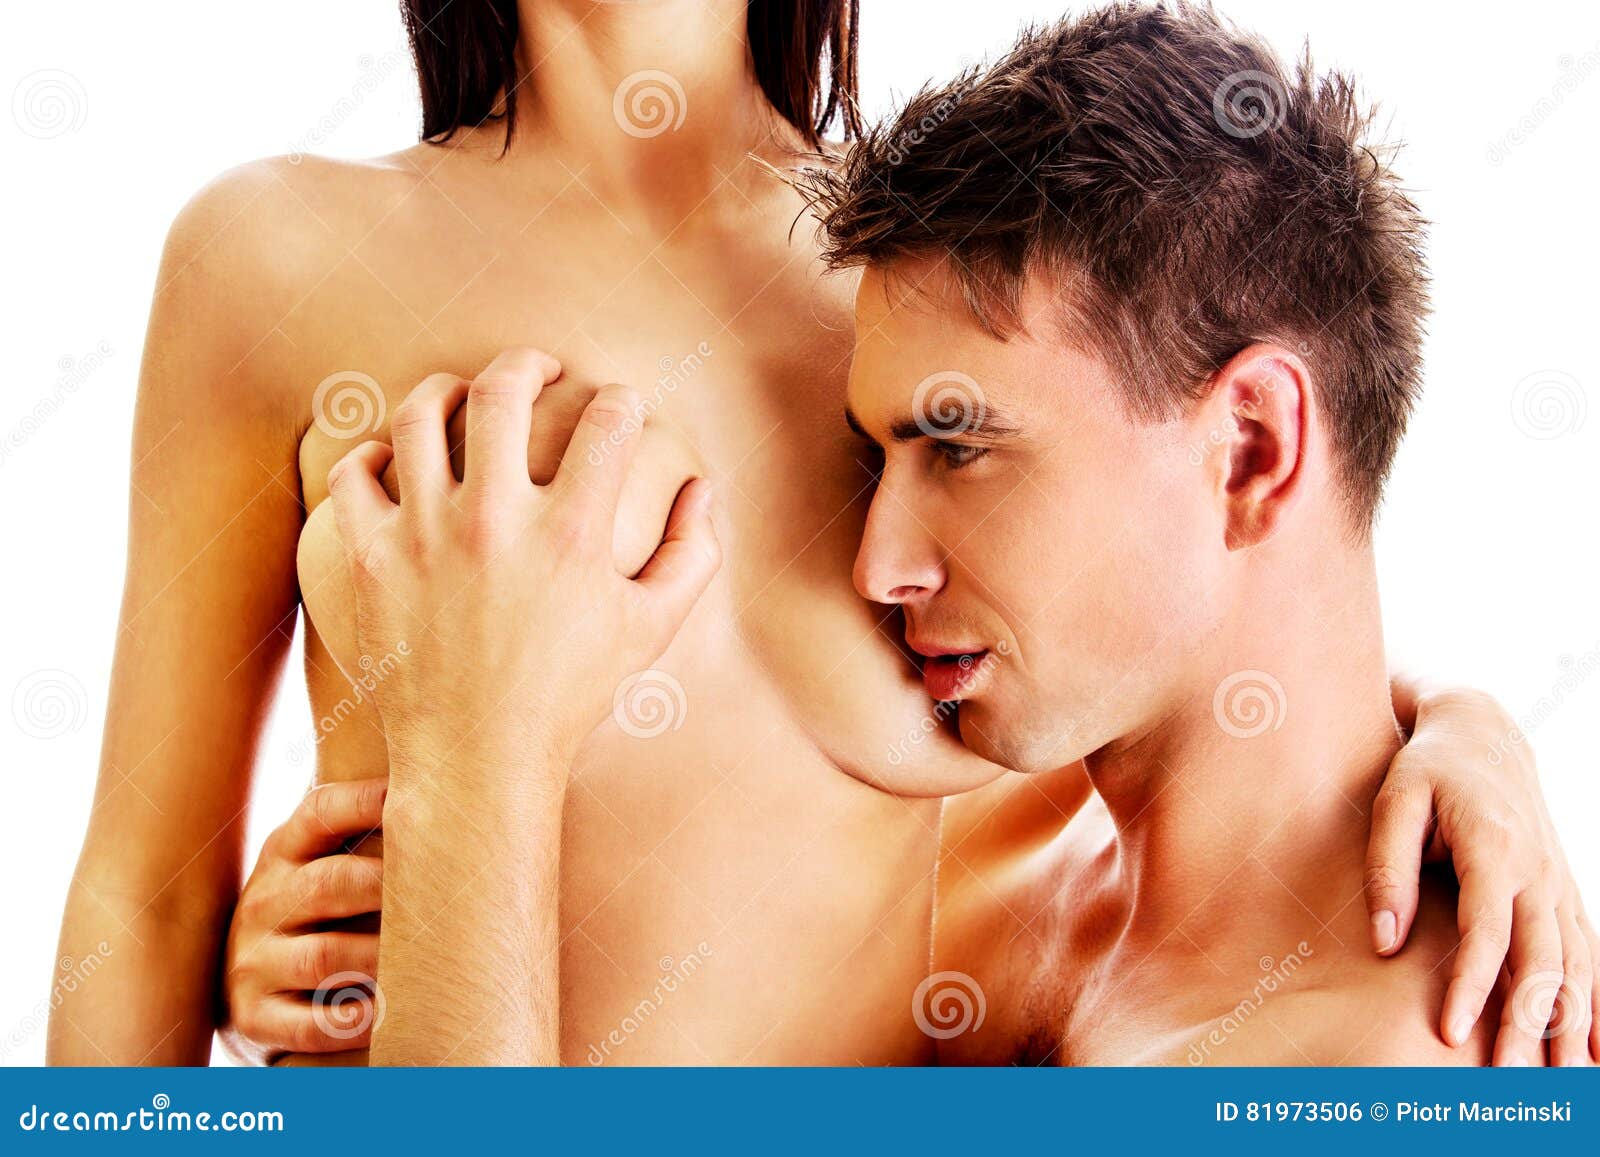 фото мужчин с женскими грудями фото 17